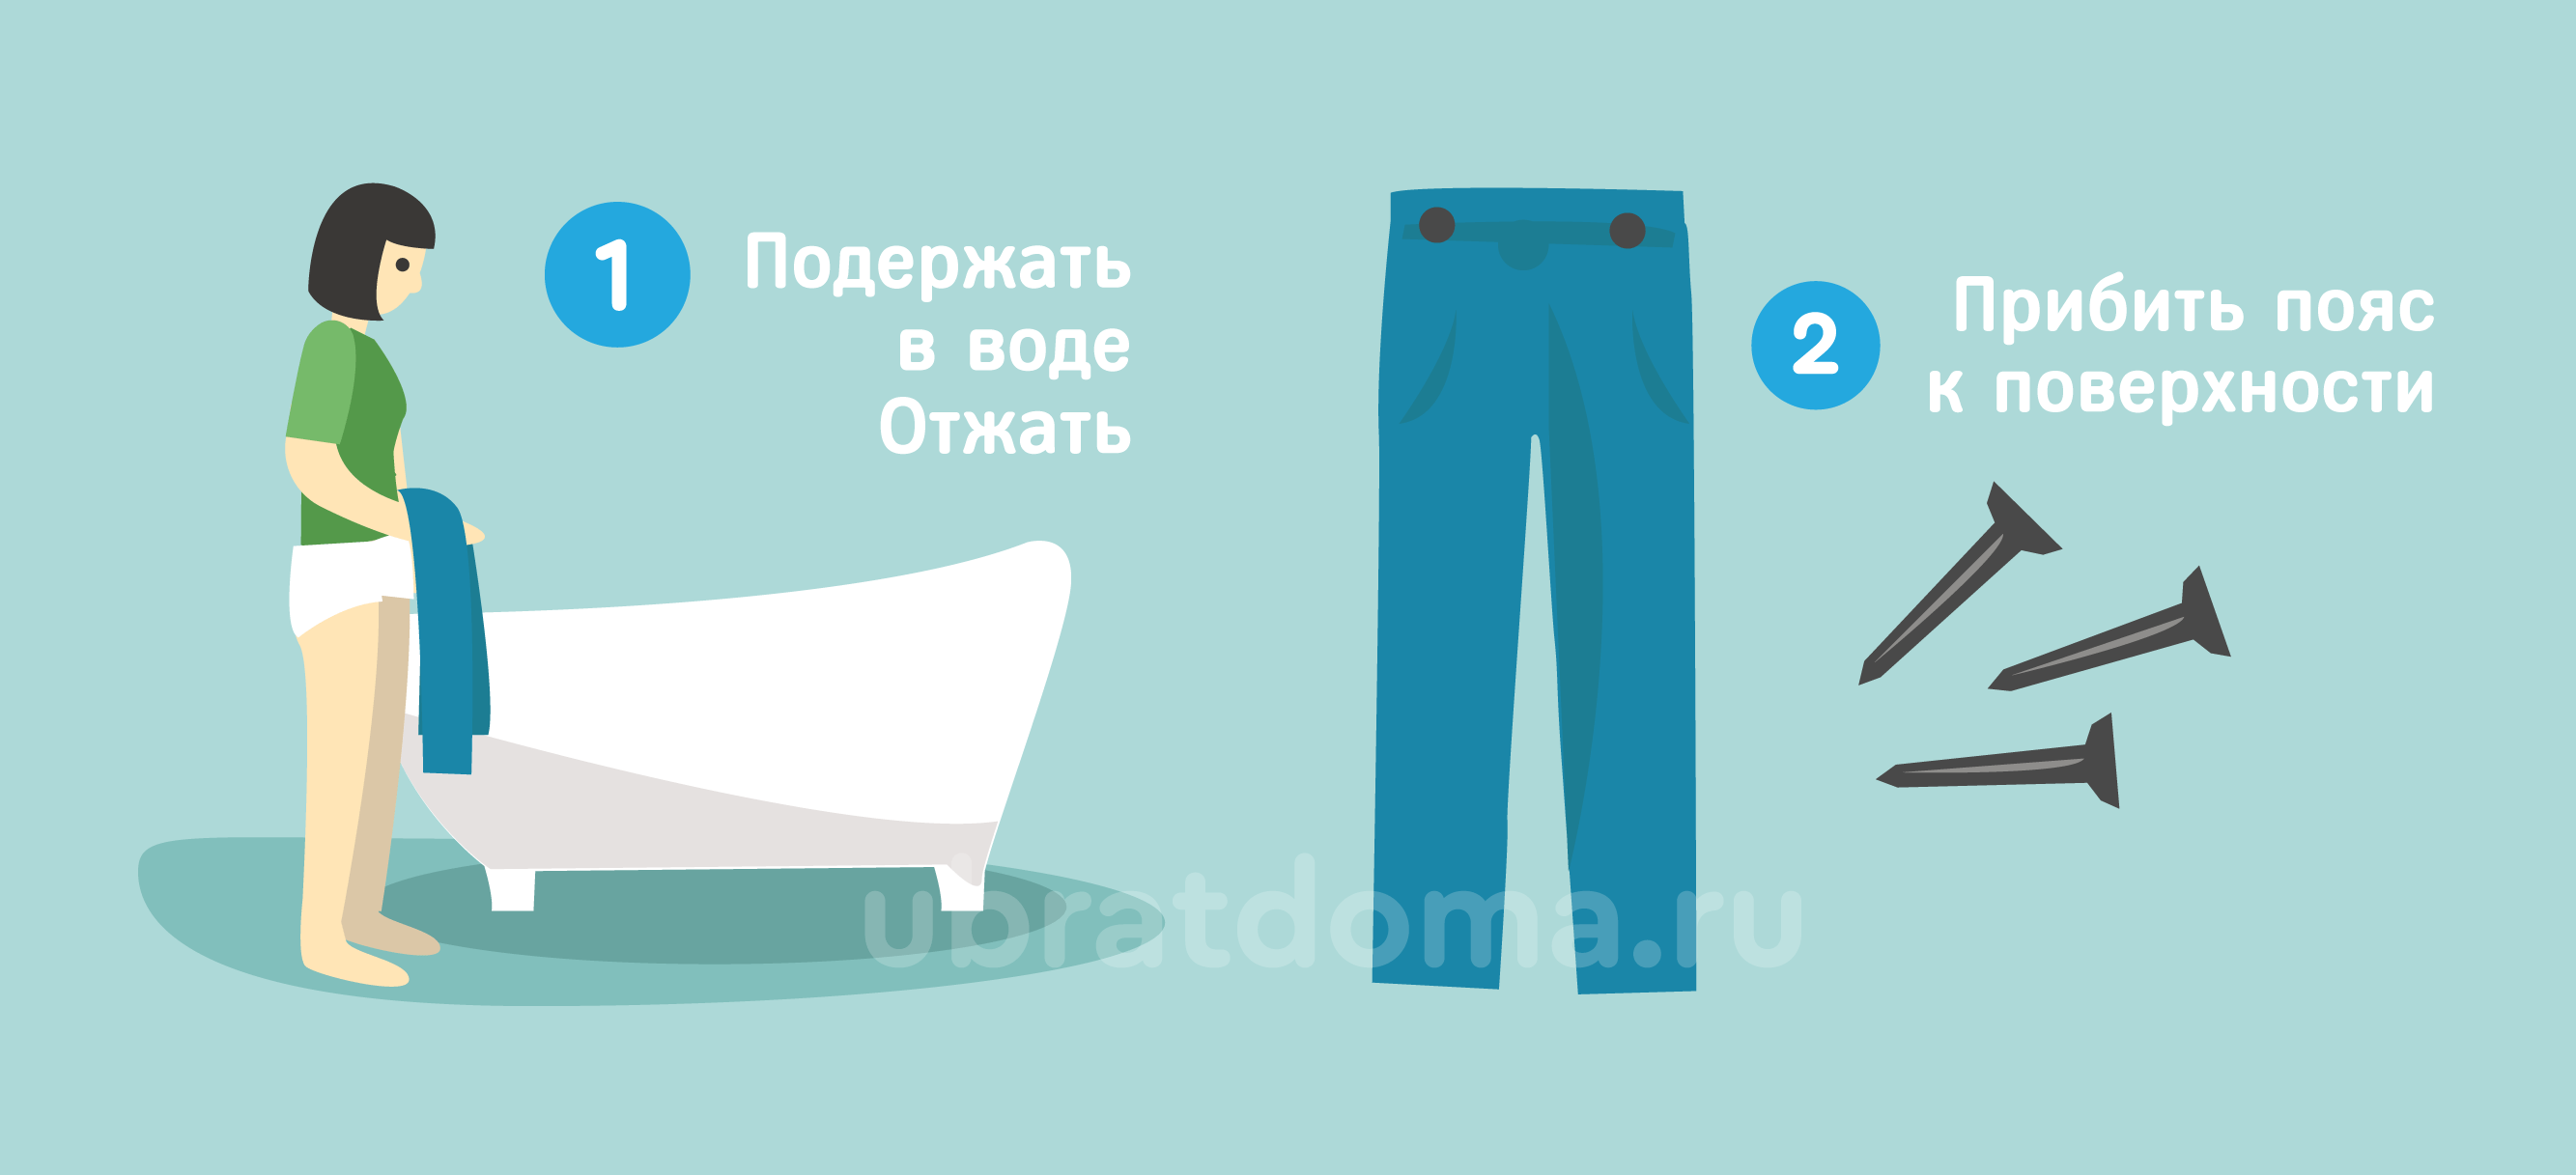 Как растянуть джинсы в домашних условиях